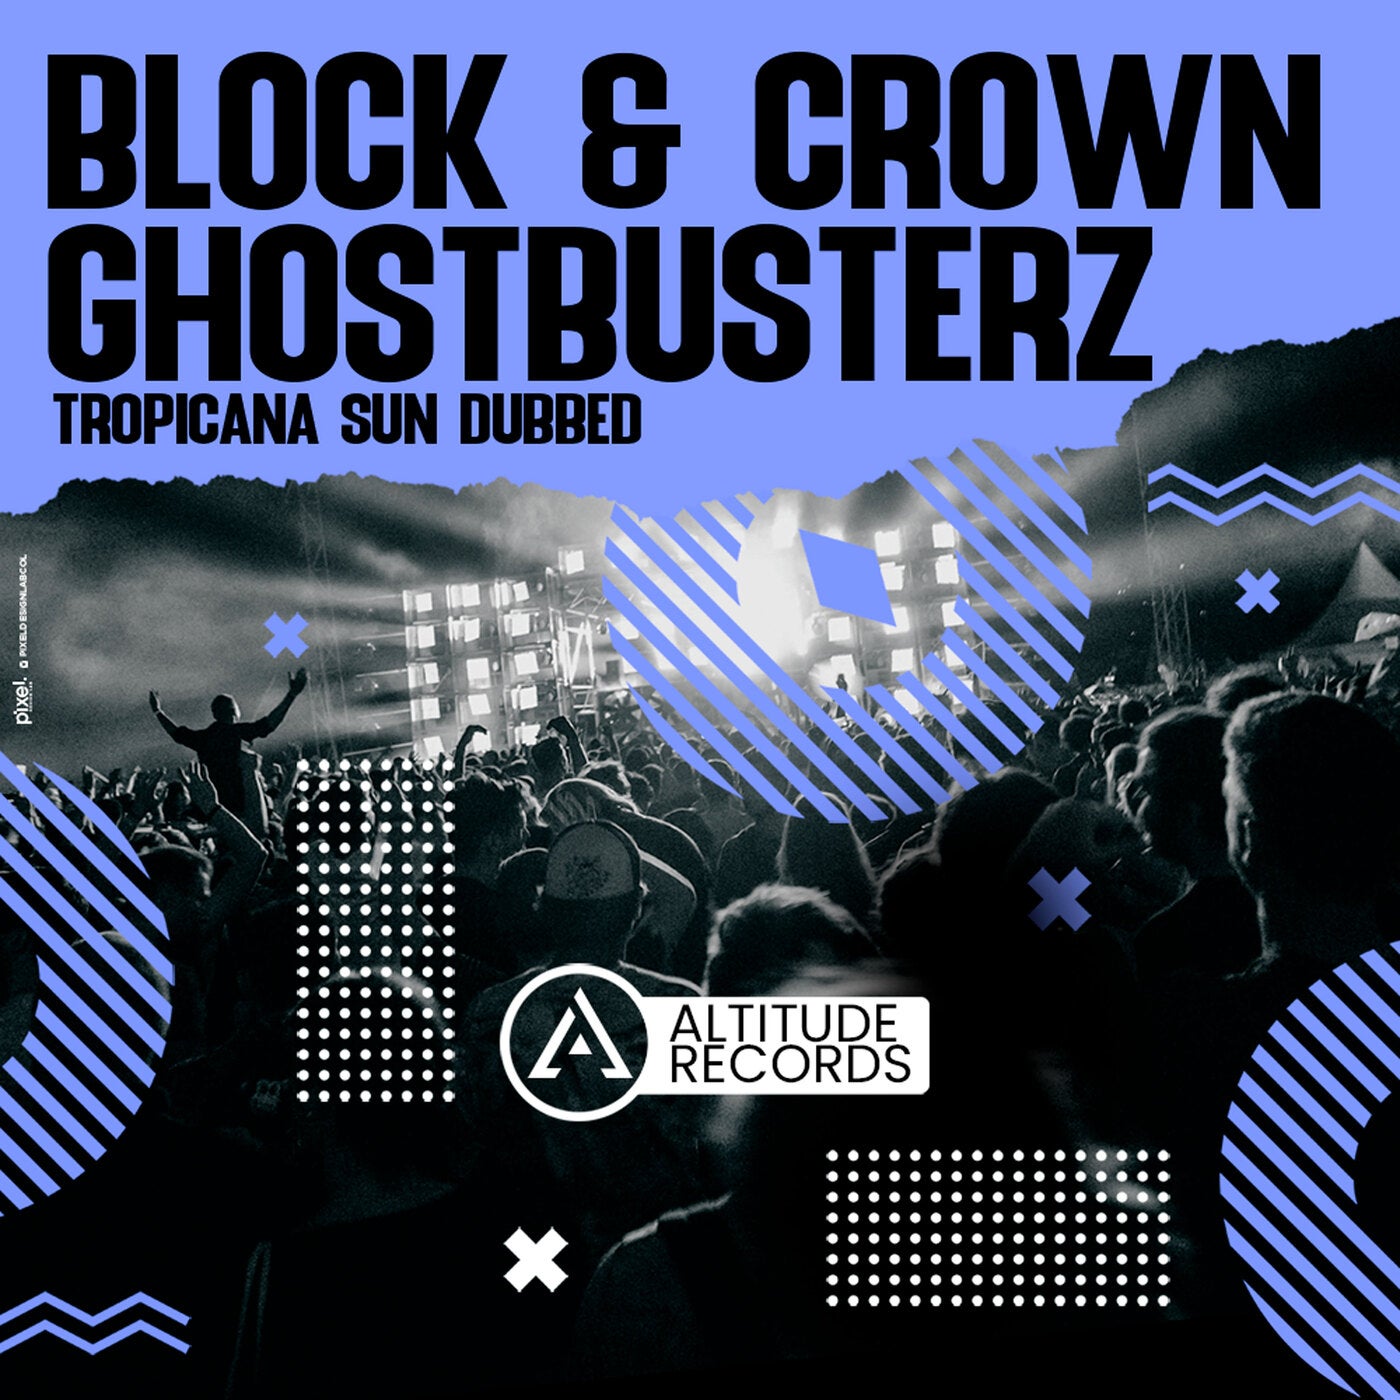 Block & Crown, Ghostbusterz – Tropicana Sun Dubbed [ATR078]